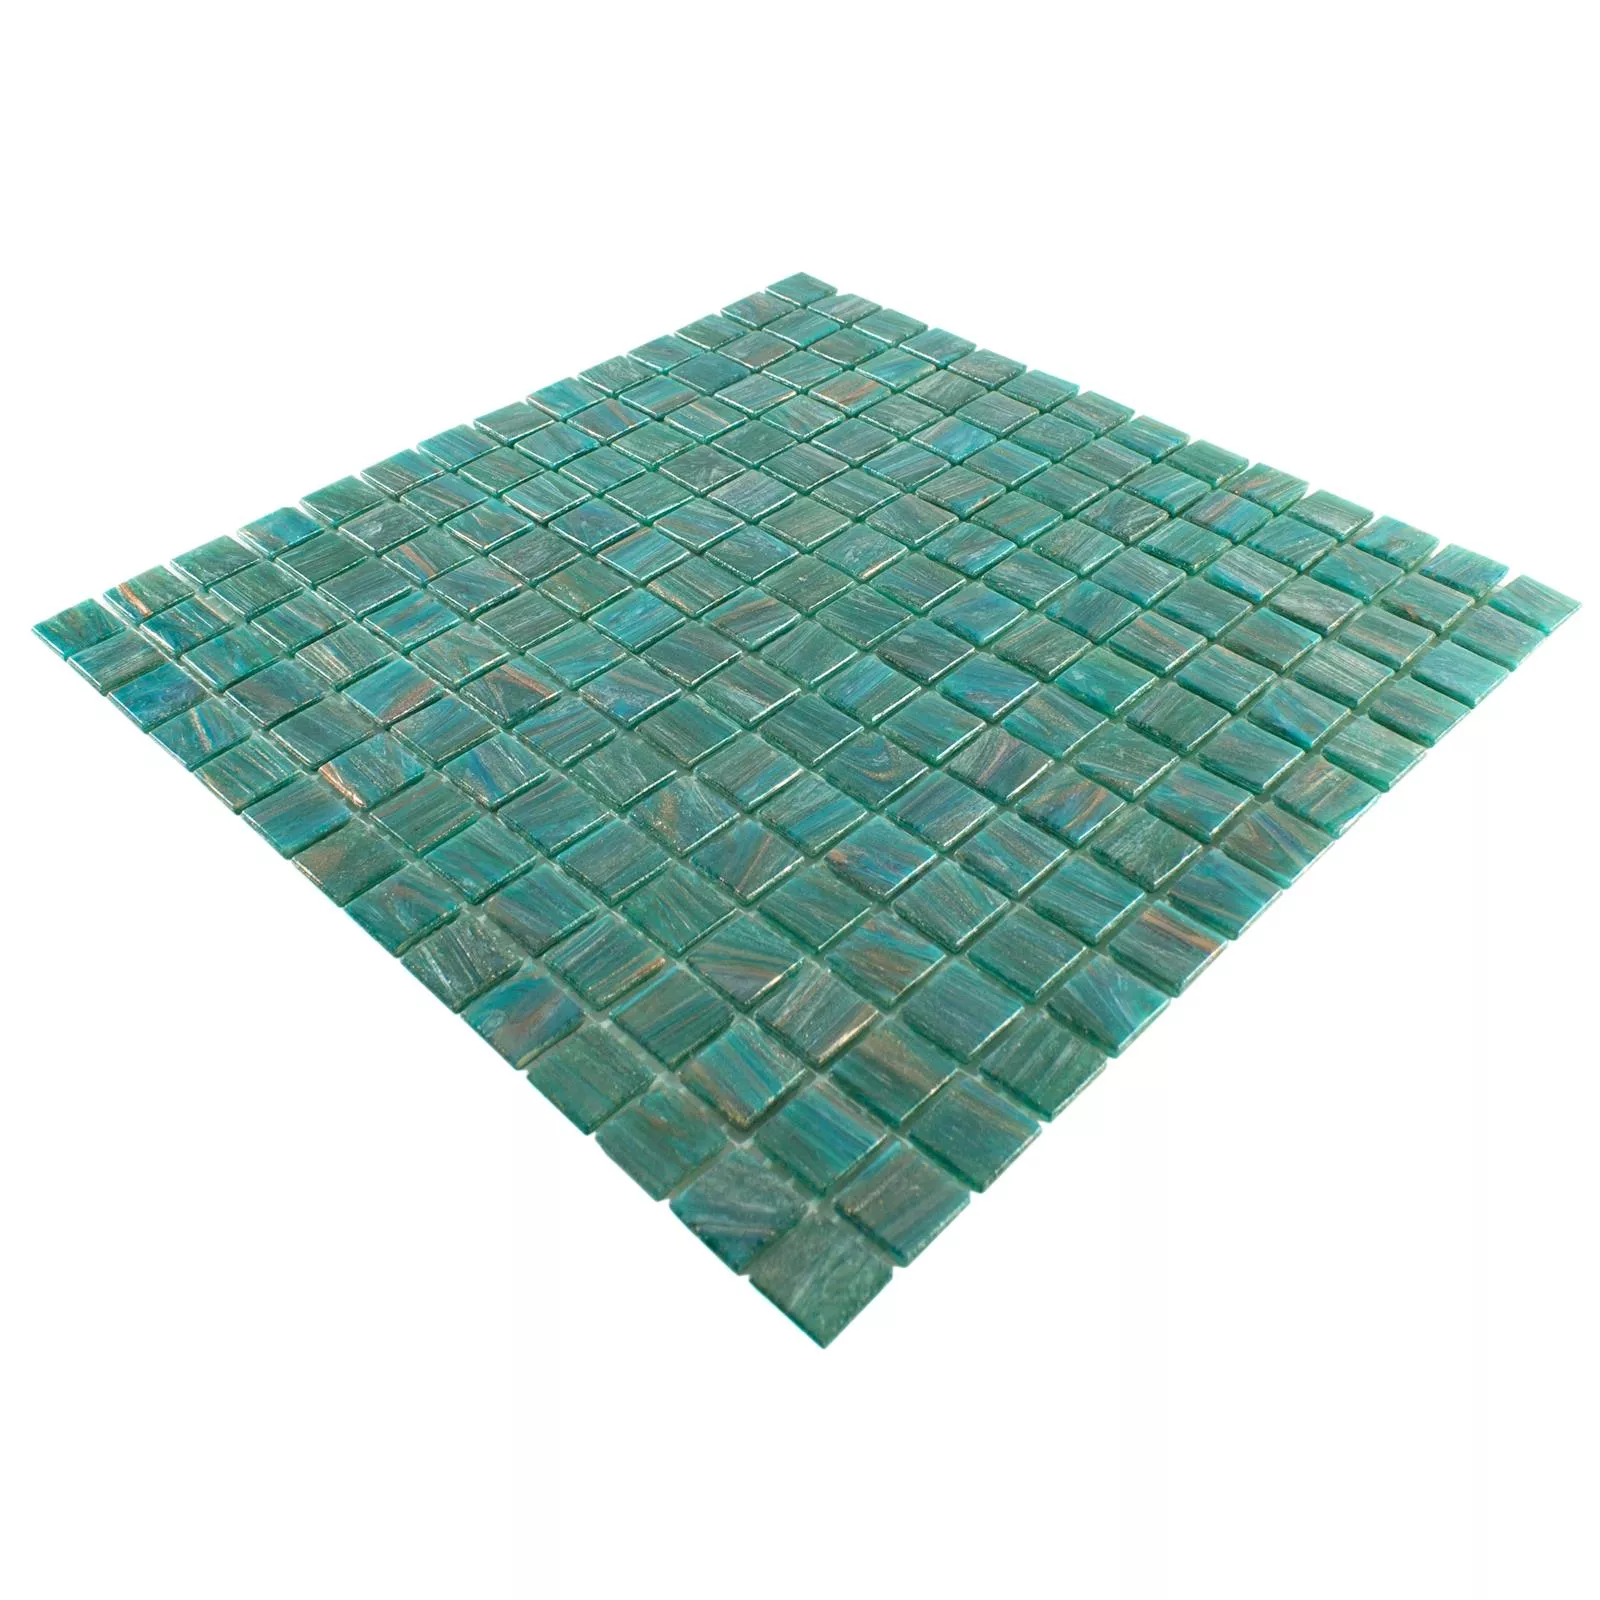 Vidro Azulejo Mosaico Ogeday Efeito Ouro Verde